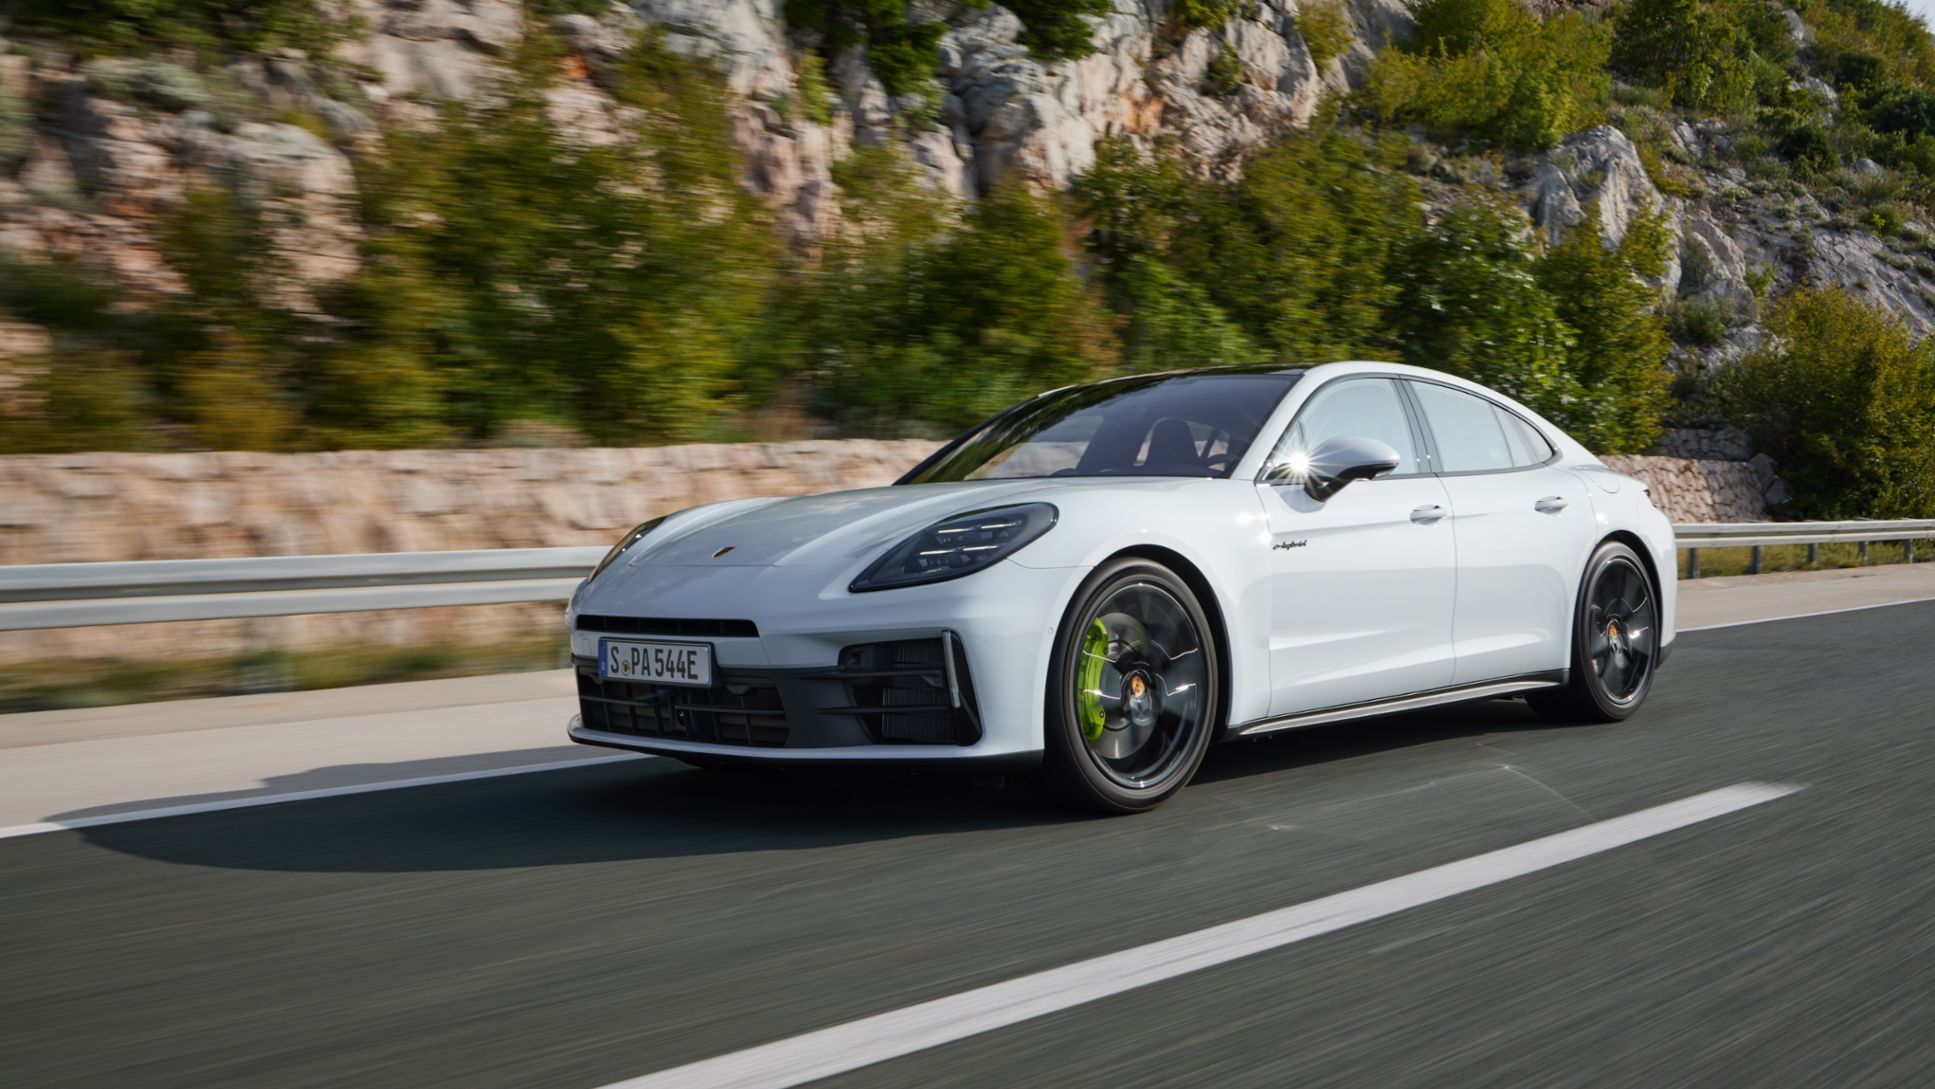 Porsche prezintă două noi variante e-hybrid ale modelului Panamera, comunicat de presă, 20/02/2024, Porsche AG